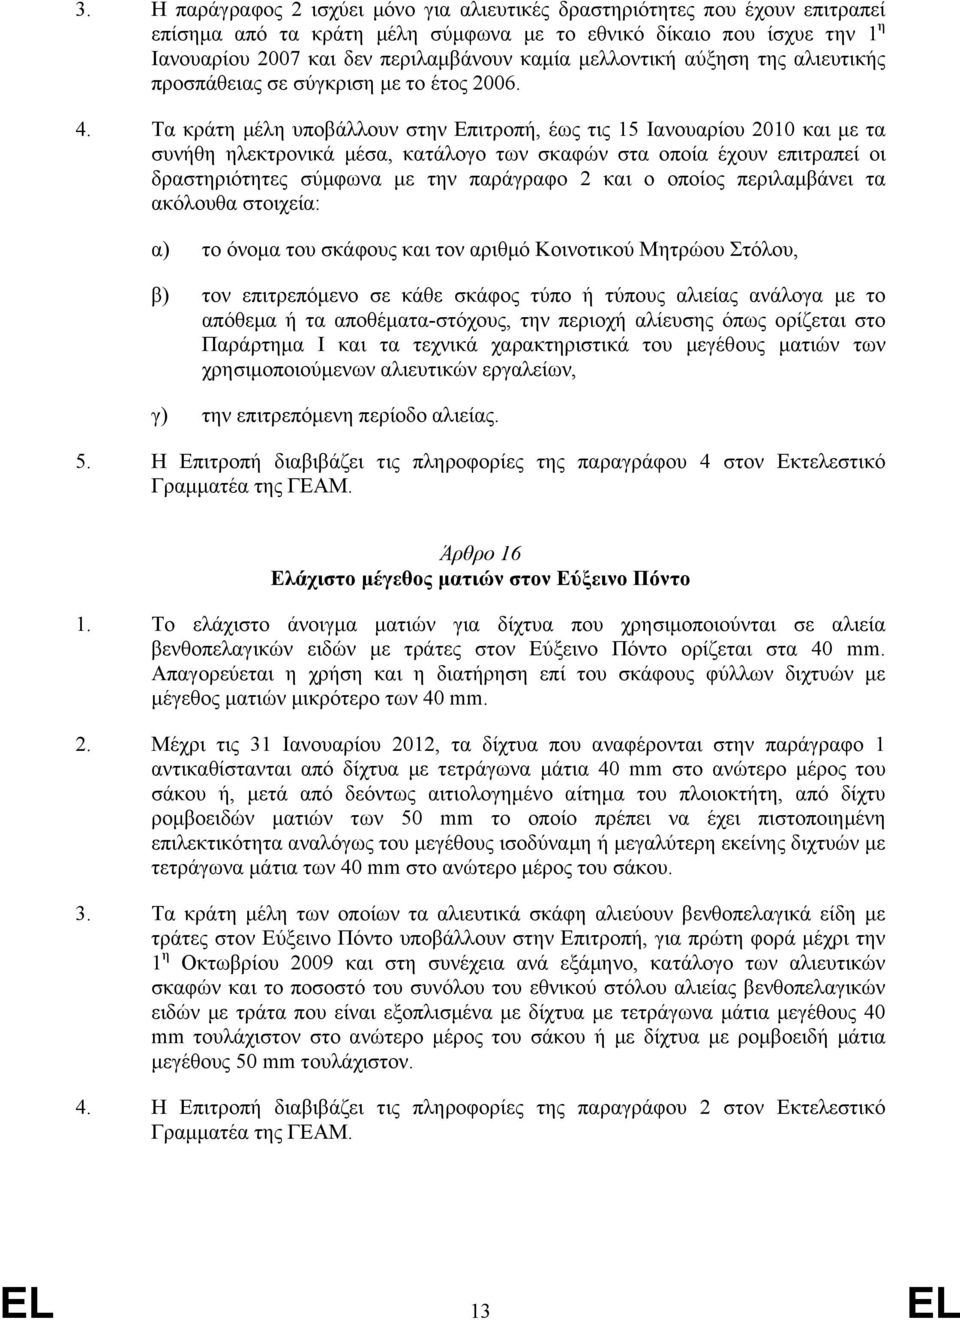 Τα κράτη µέλη υποβάλλουν στην Επιτροπή, έως τις 15 Ιανουαρίου 2010 και µε τα συνήθη ηλεκτρονικά µέσα, κατάλογο των σκαφών στα οποία έχουν επιτραπεί οι δραστηριότητες σύµφωνα µε την παράγραφο 2 και ο